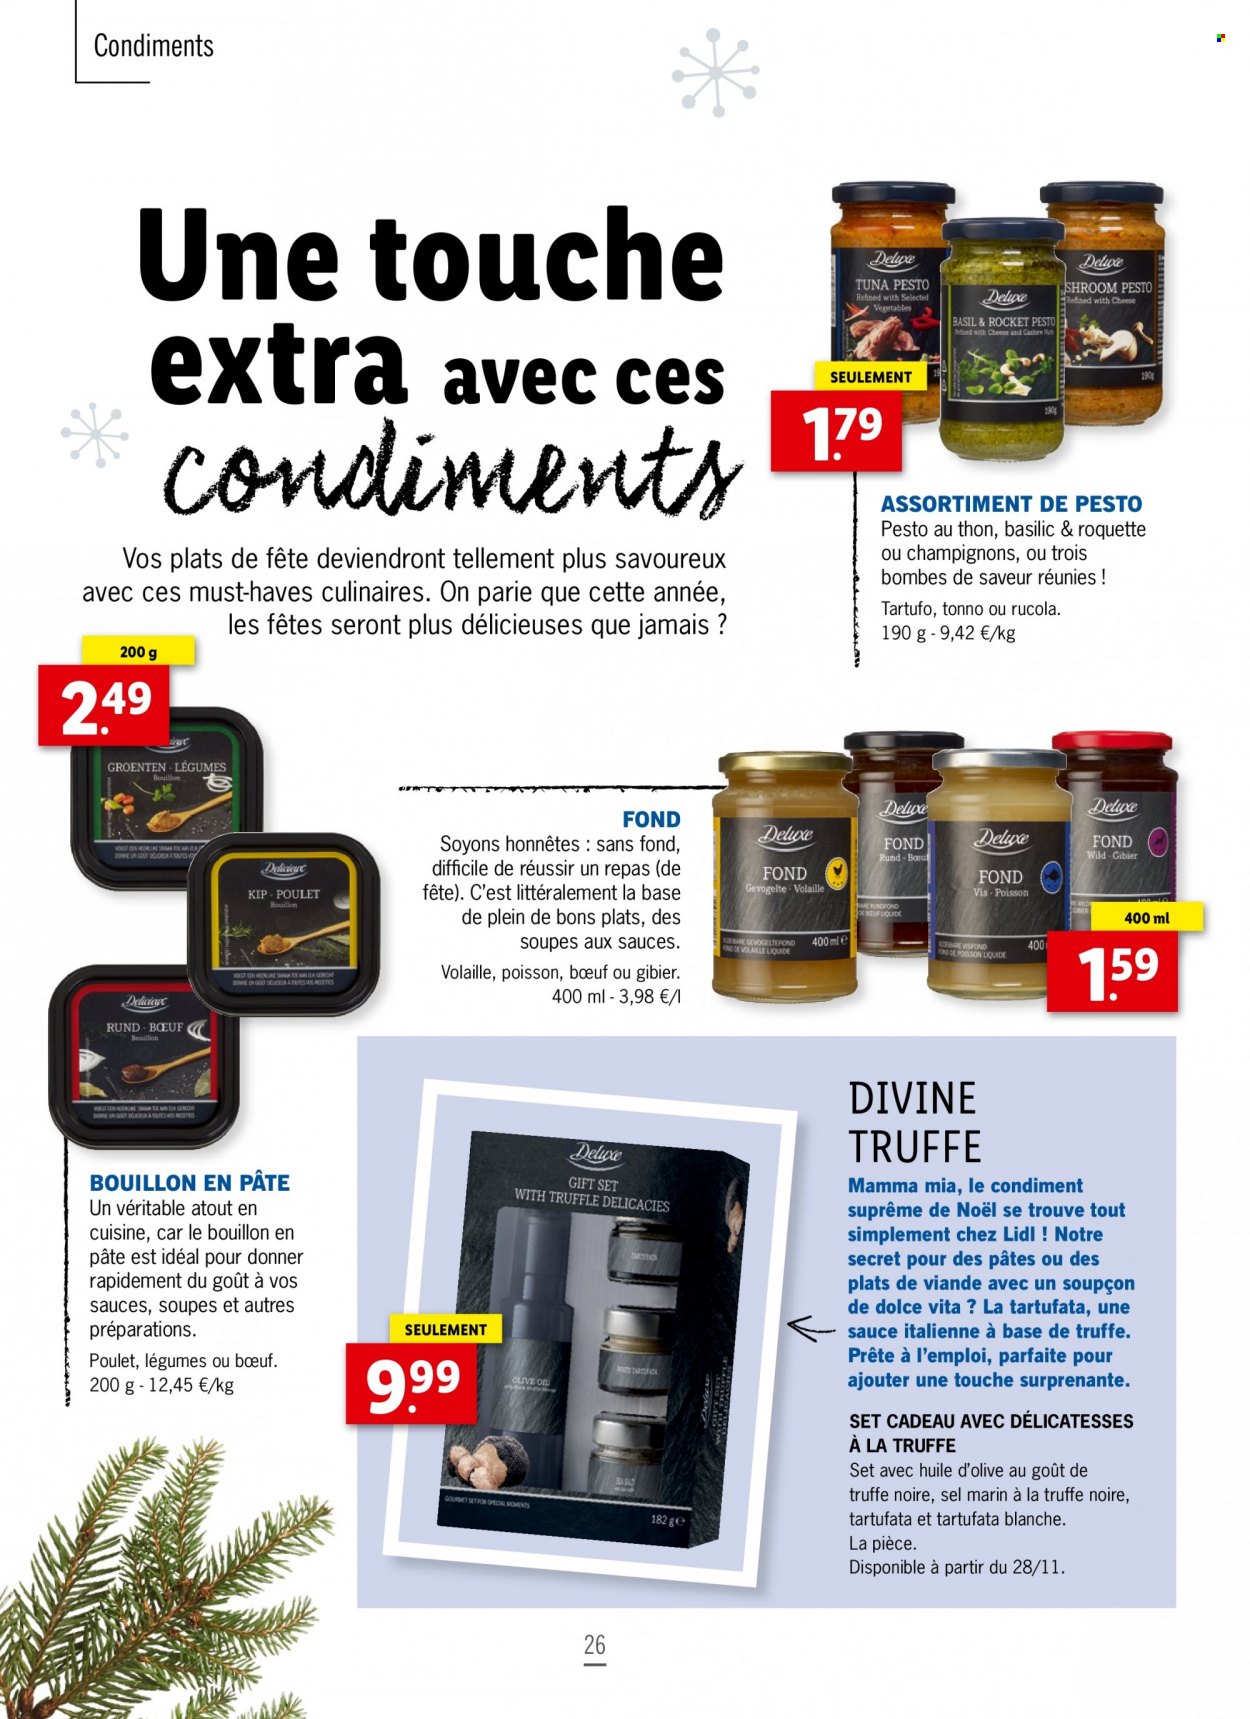 thumbnail - Catalogue Lidl - Produits soldés - sel, bouillon, tartufata, basilic, huile d'olive, pesto. Page 26.